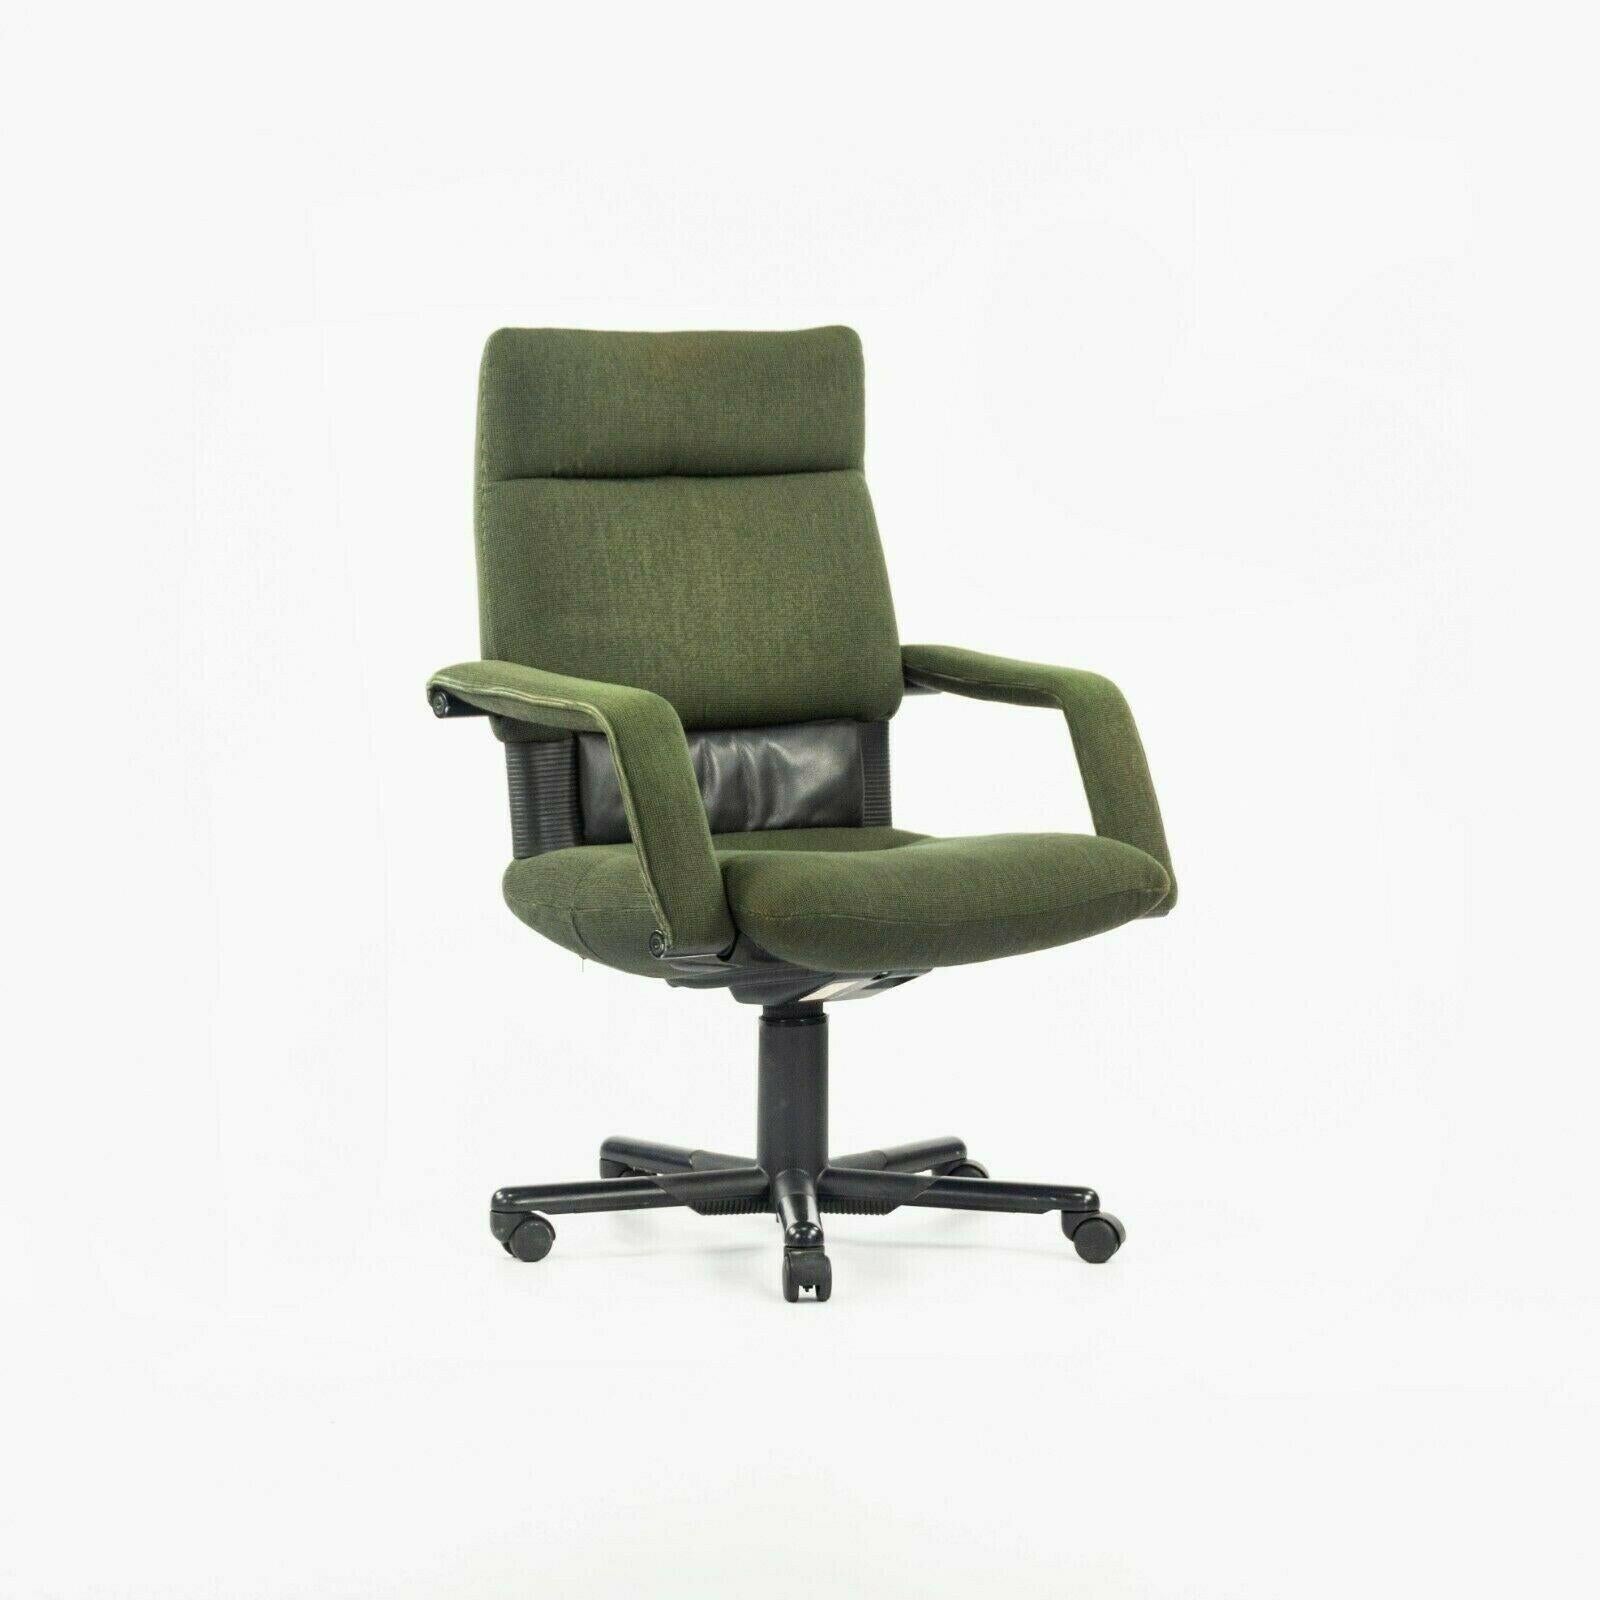 La chaise de bureau Figura 1997 de Vitra, conçue par Mario Bellini, est proposée à la vente en un seul exemplaire (deux sont disponibles, mais le prix s'applique à chaque chaise). Il s'agit de magnifiques exemplaires d'origine, qui ont conservé leur